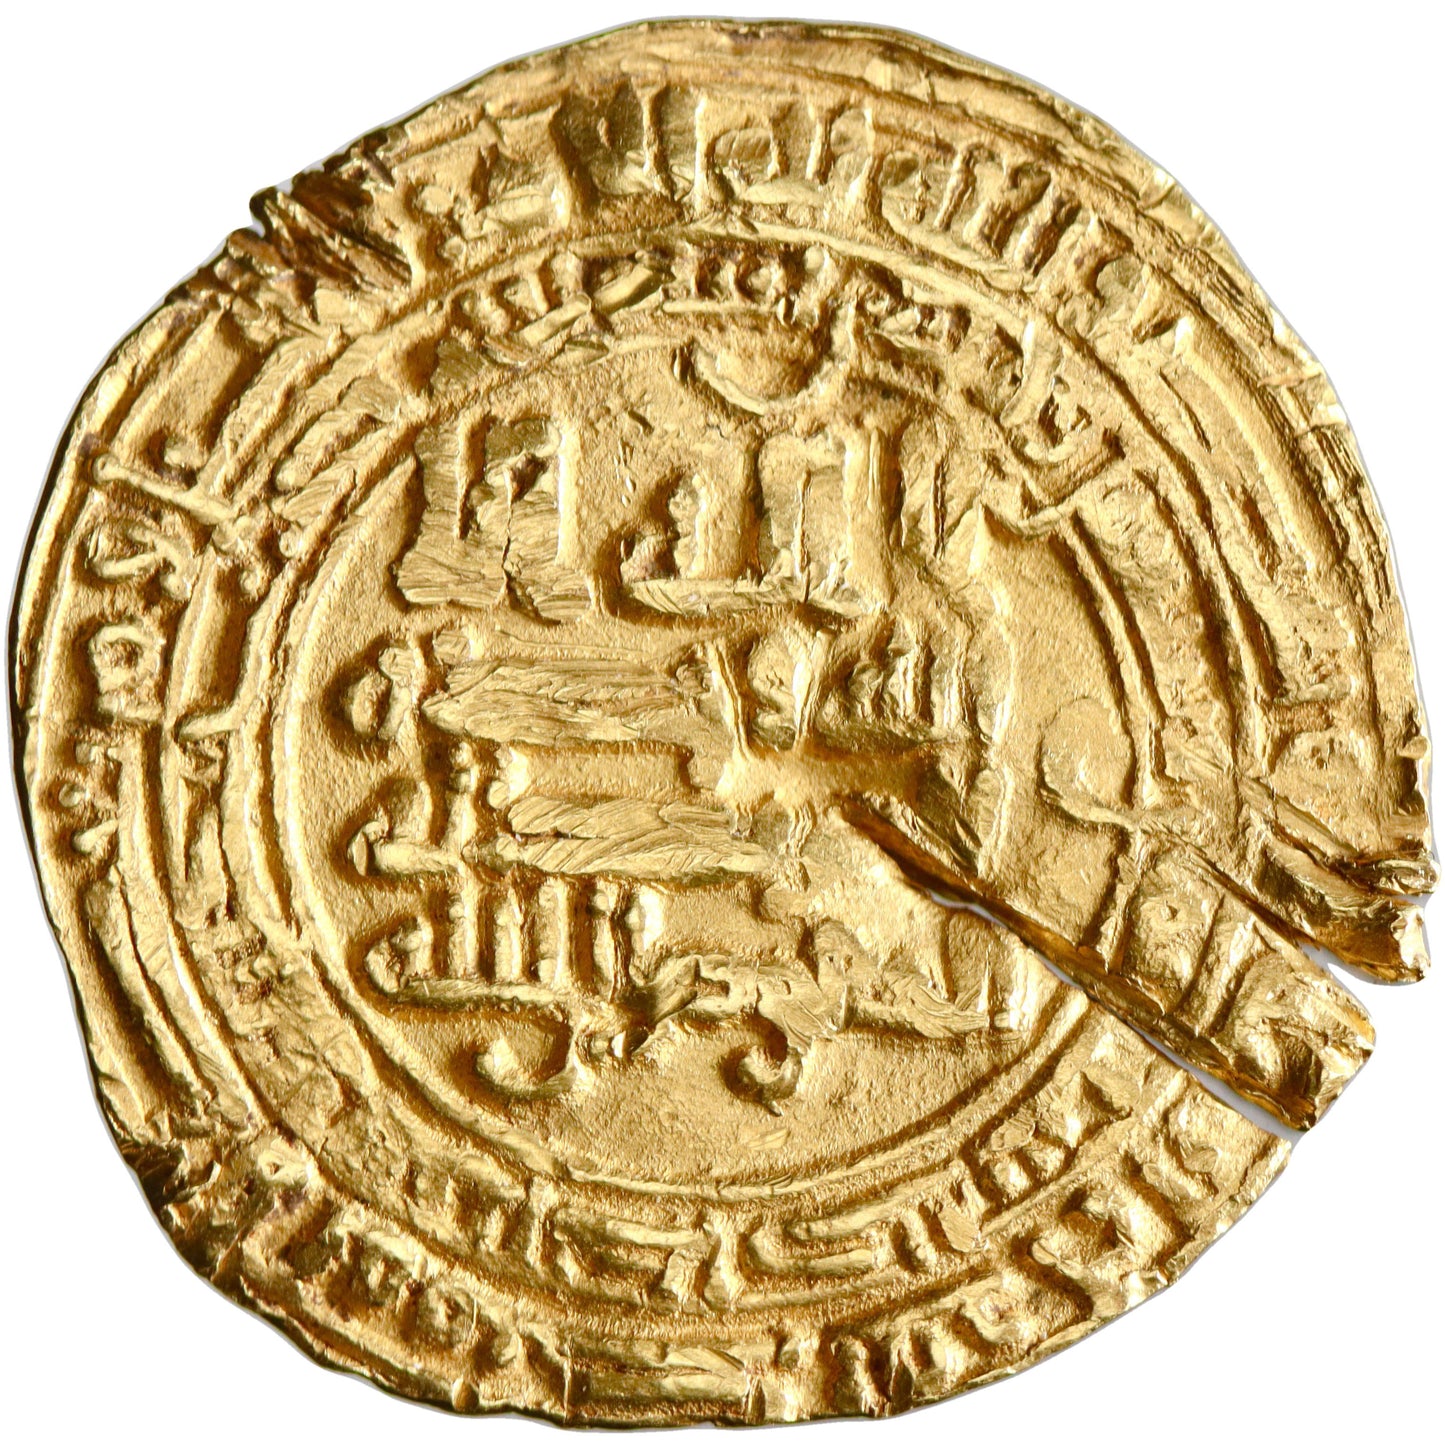 Tulunid, Khumarawayh ibn Ahmad, gold dinar, Antakiya mint, AH 278, citing Al-Mu'tamid and Al-Mufawwidh